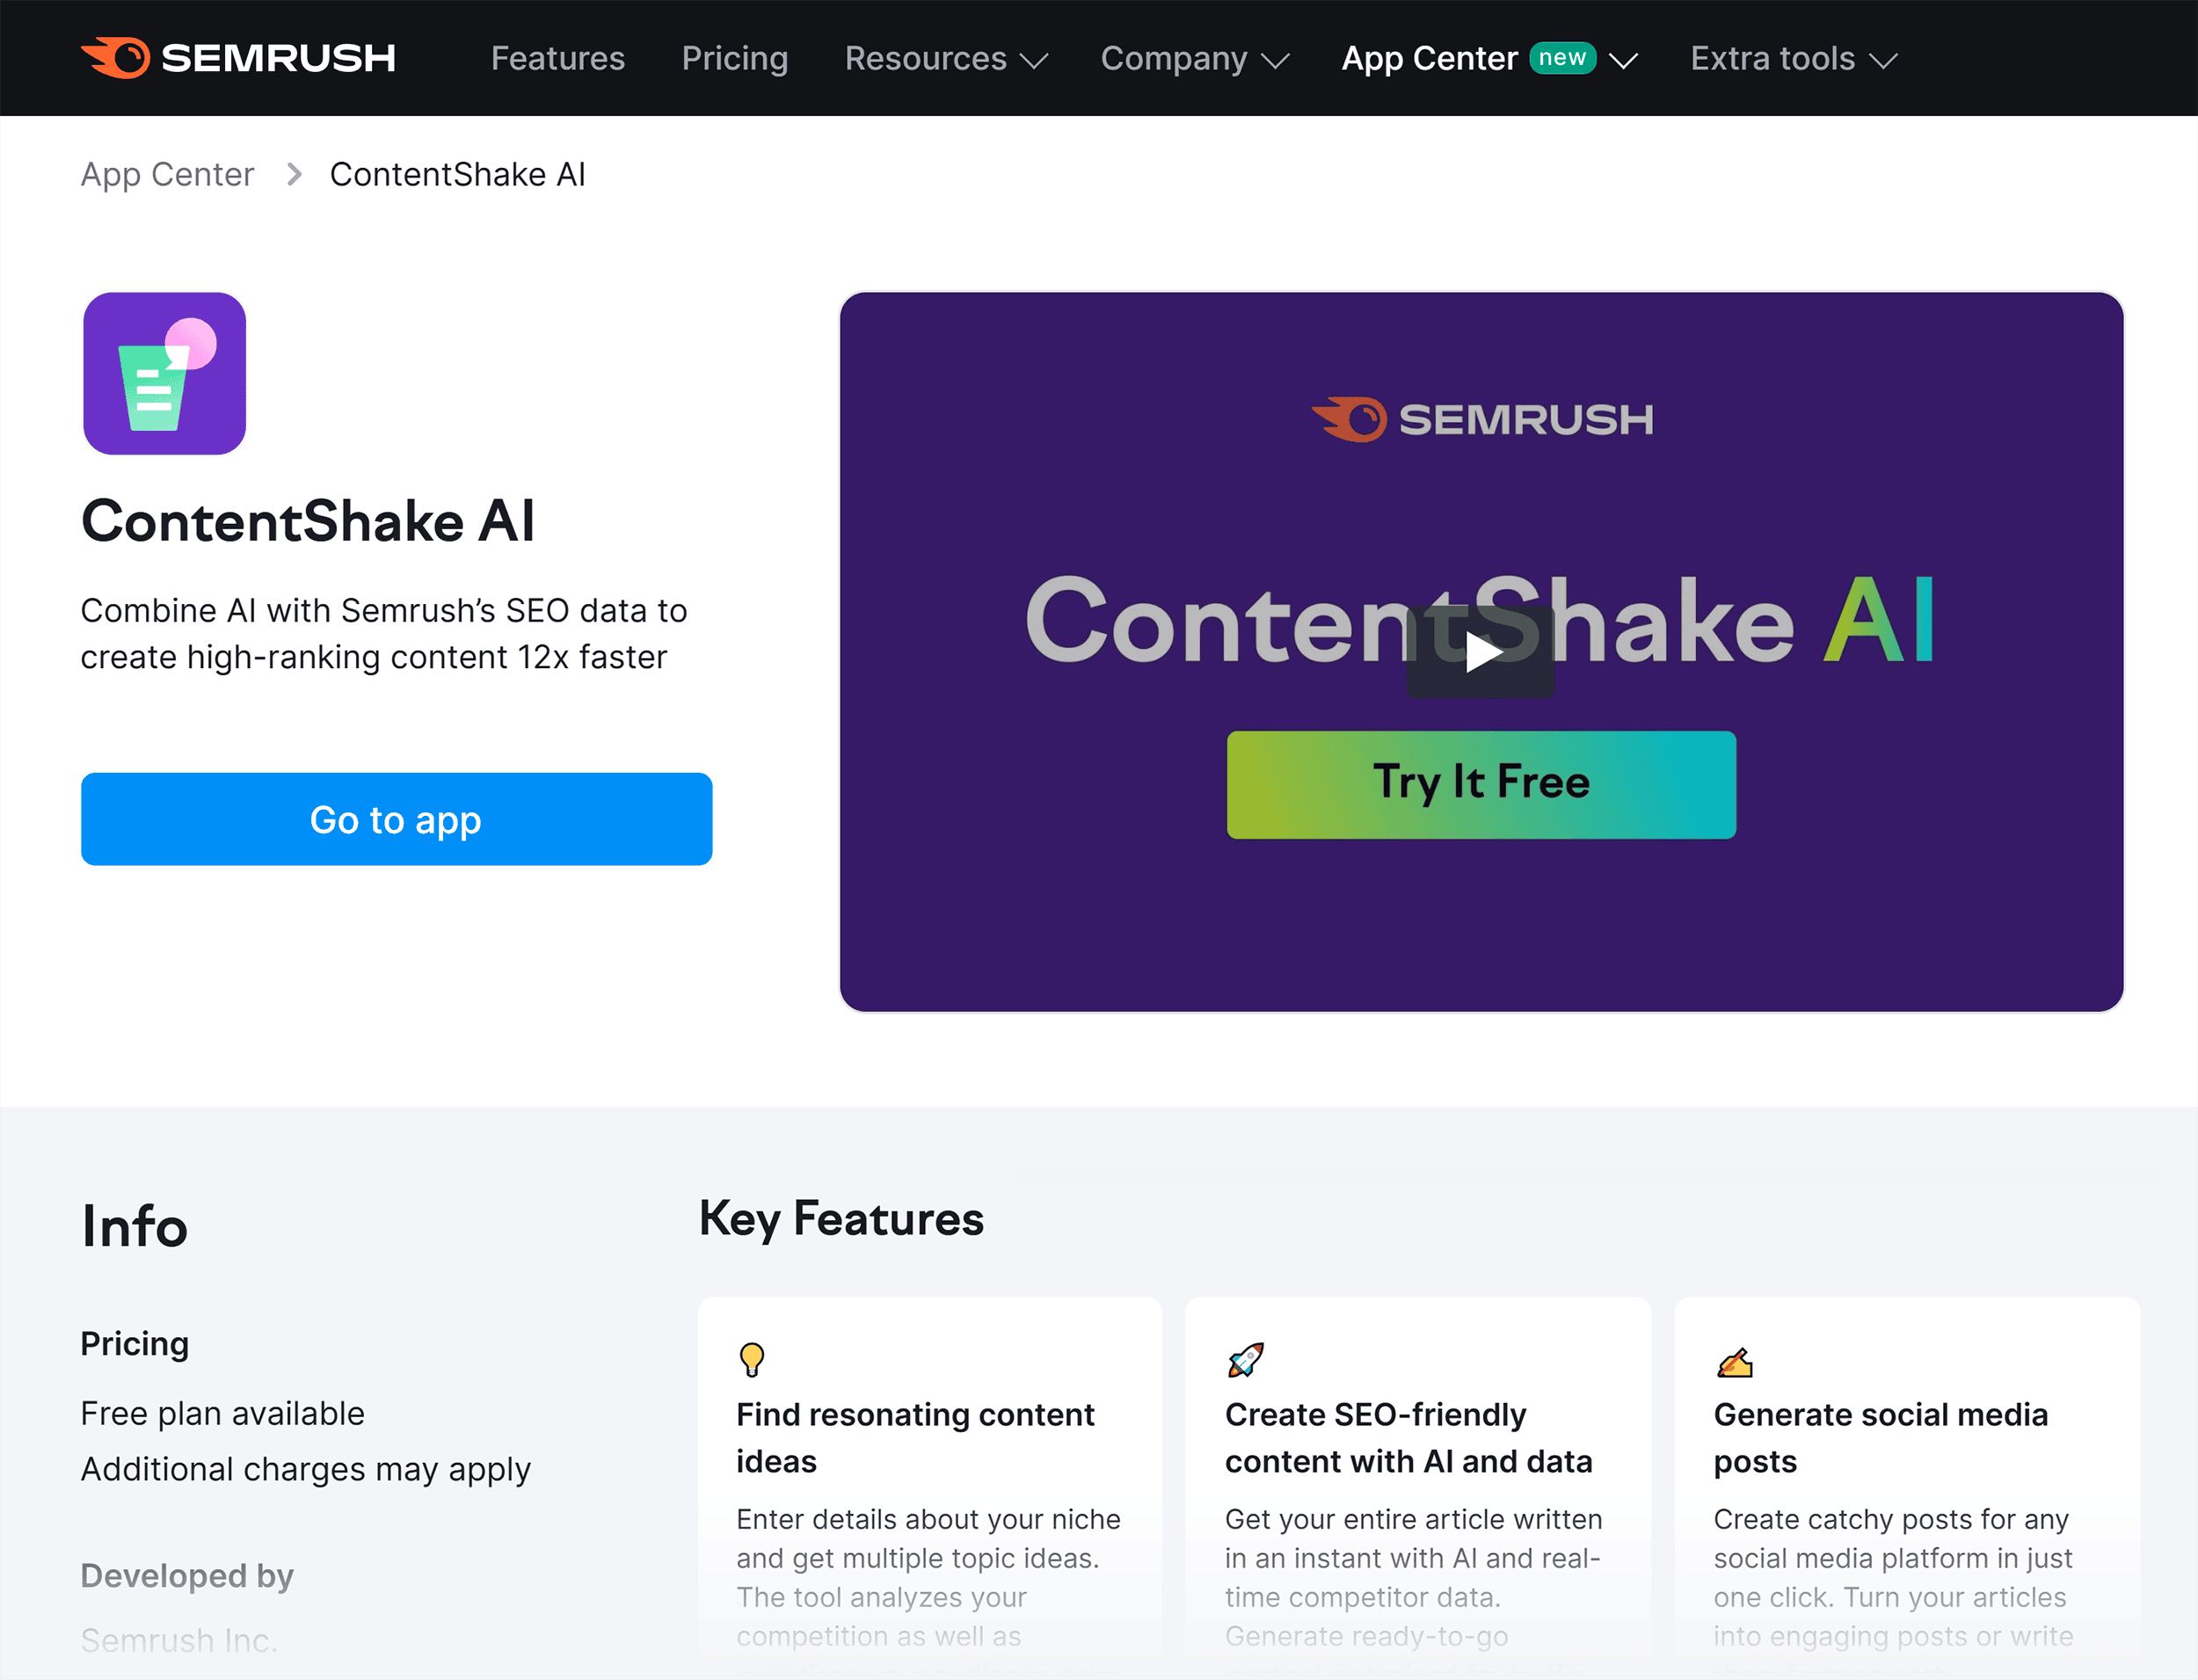 Semrush – ContentShake